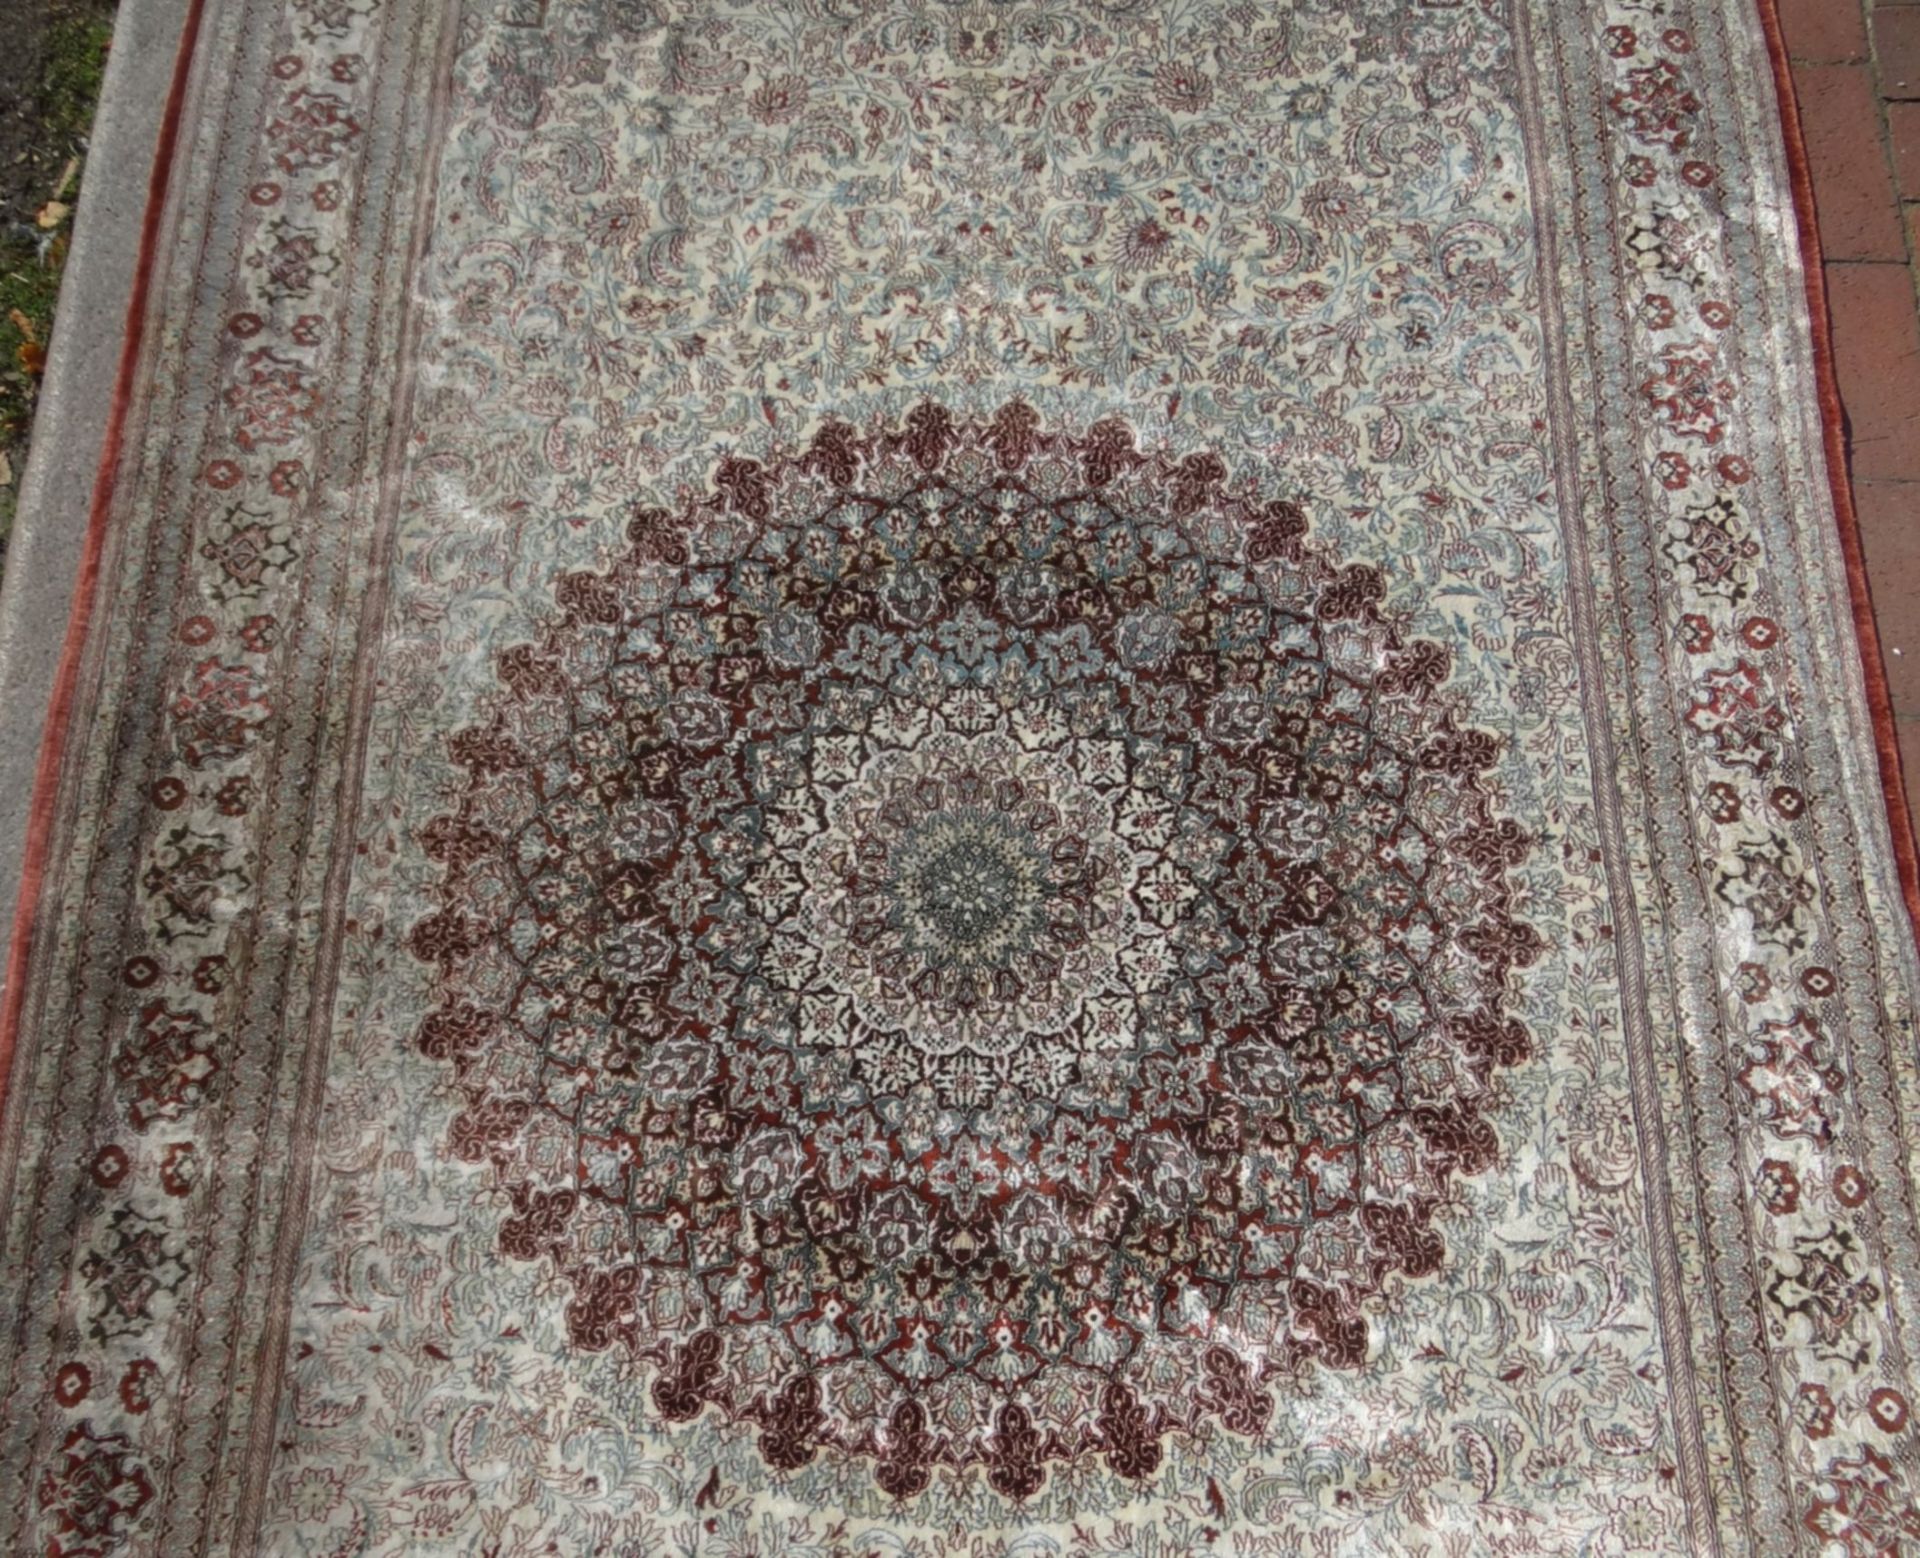 Siedenteppich, wohl Iran, 245x155 cm - Bild 3 aus 6